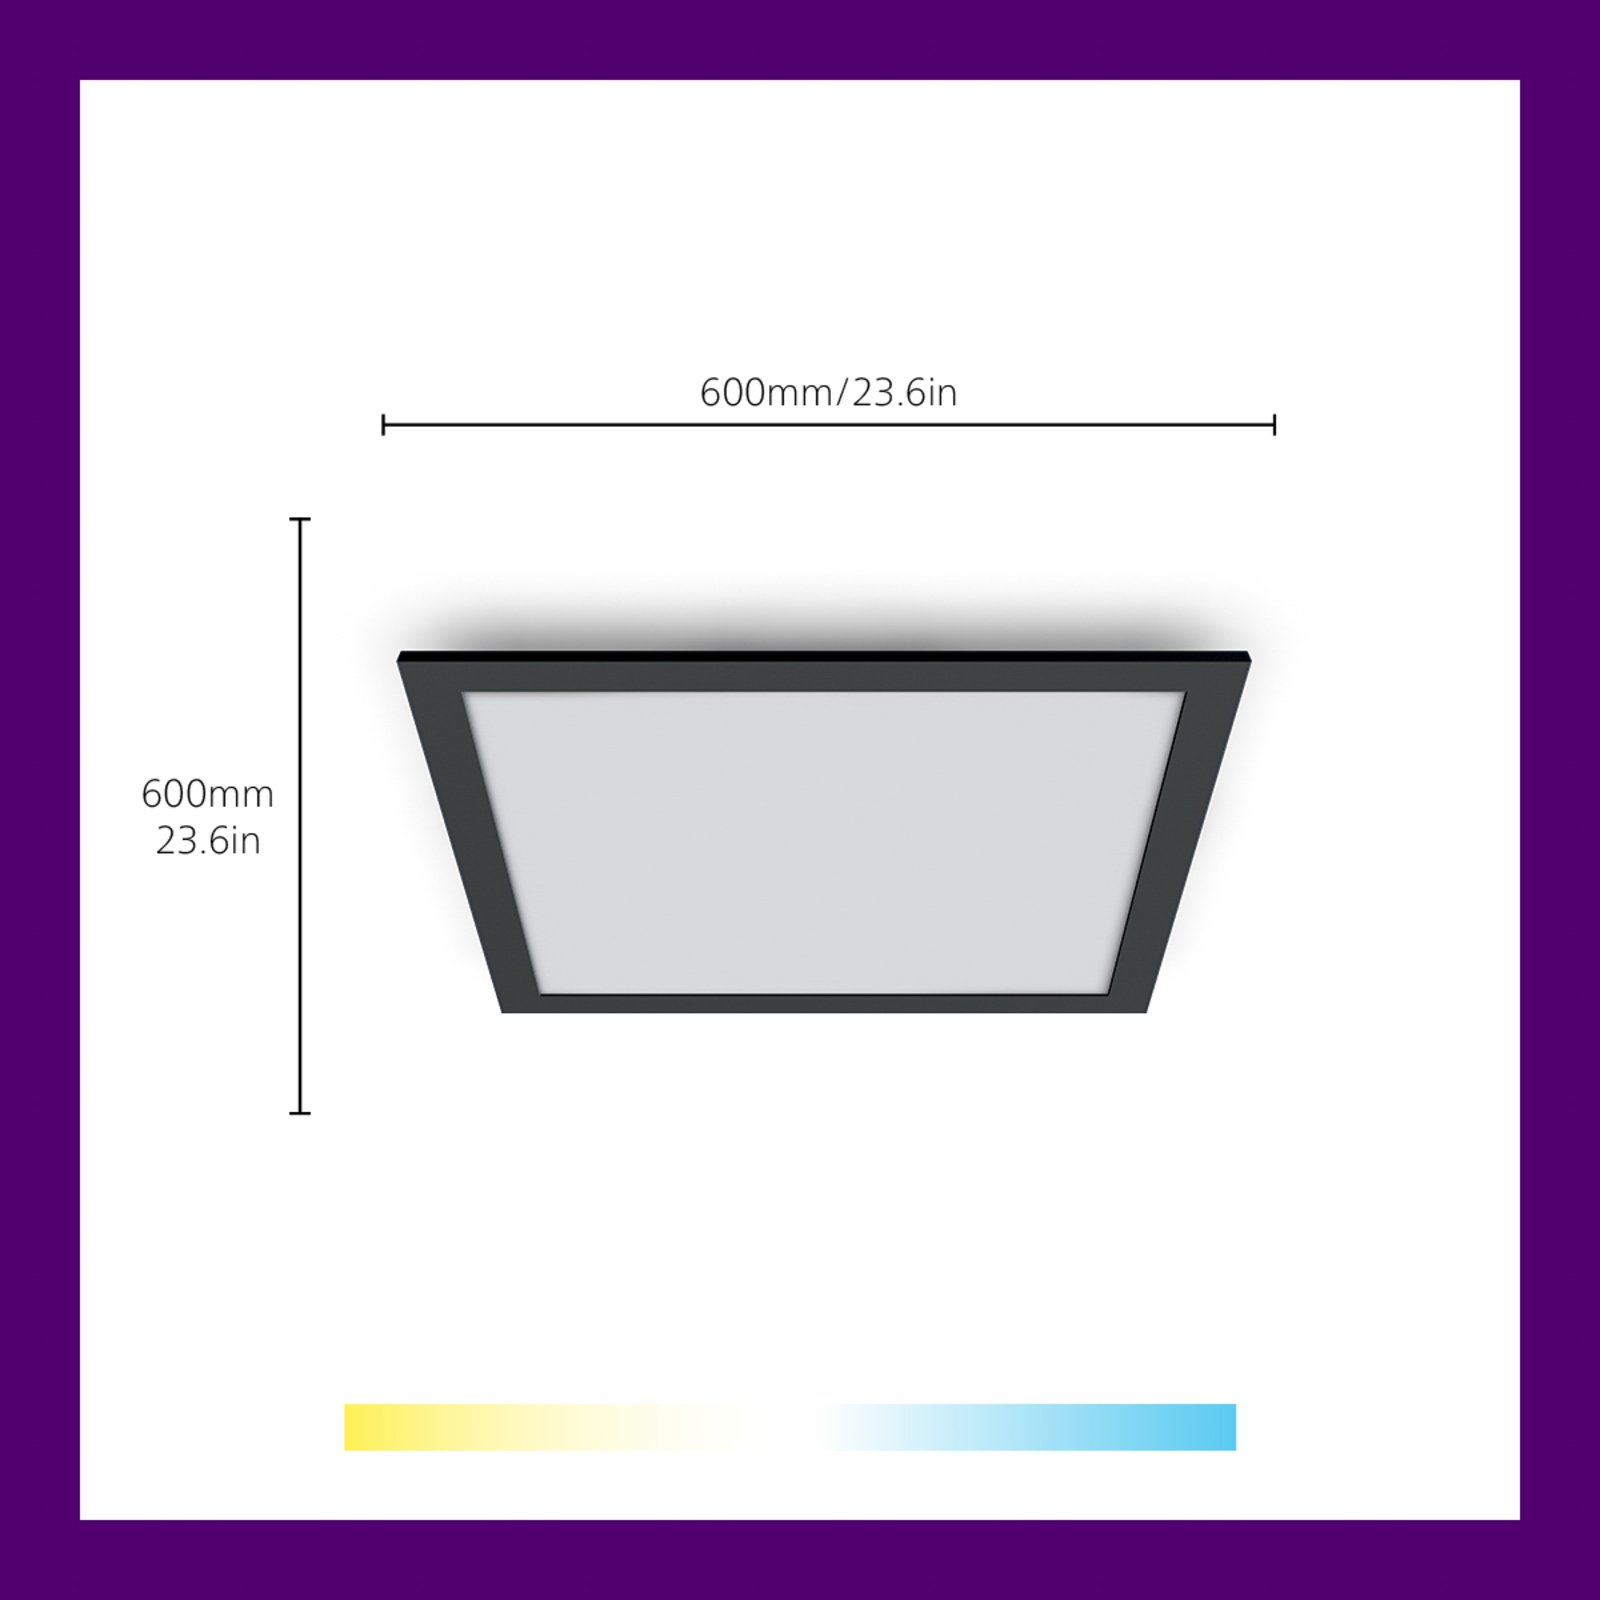 WiZ LED stropna rasvjetna ploča, crna, 60x60 cm